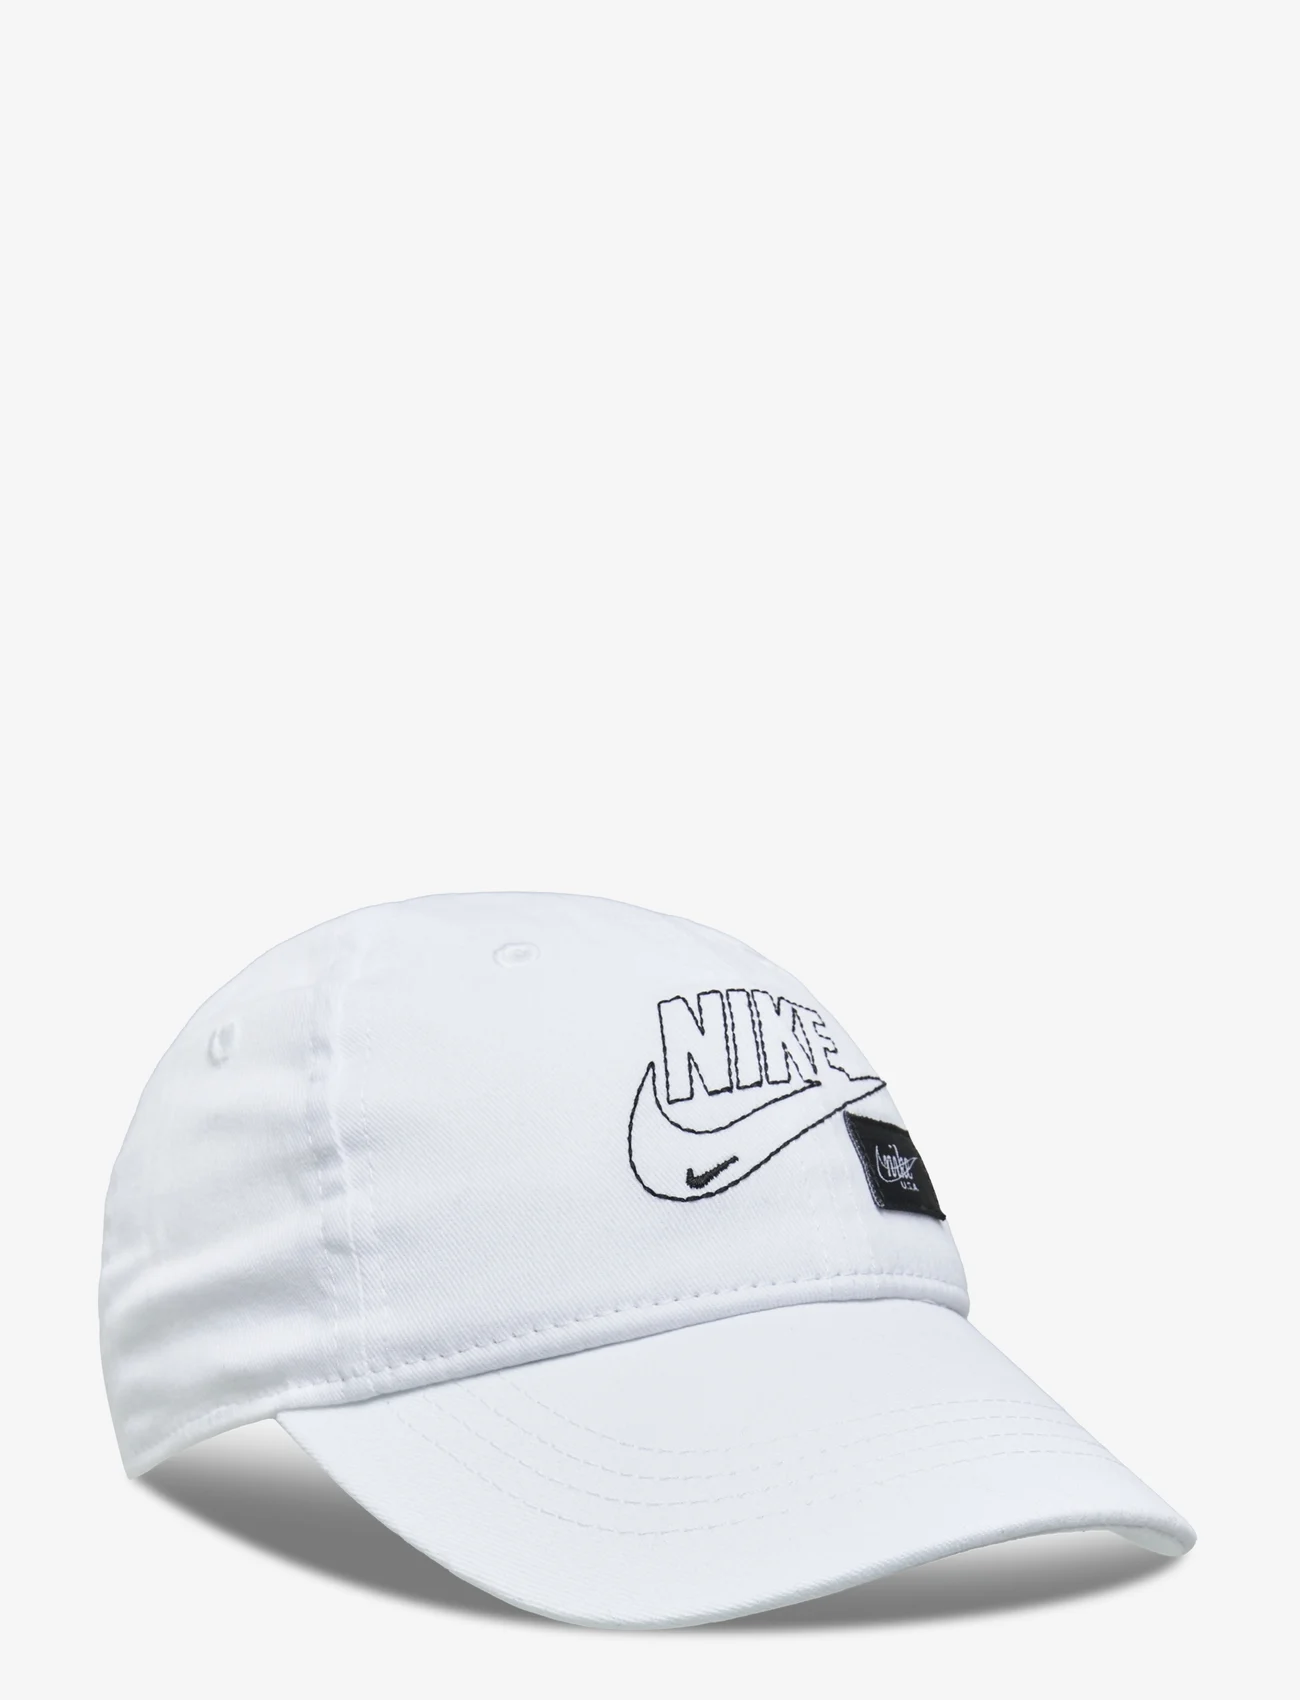 Nike - NAN LABEL MASHUP CLUB CAP / NAN LABEL MASHUP CLUB CAP - lippalakit - white - 0